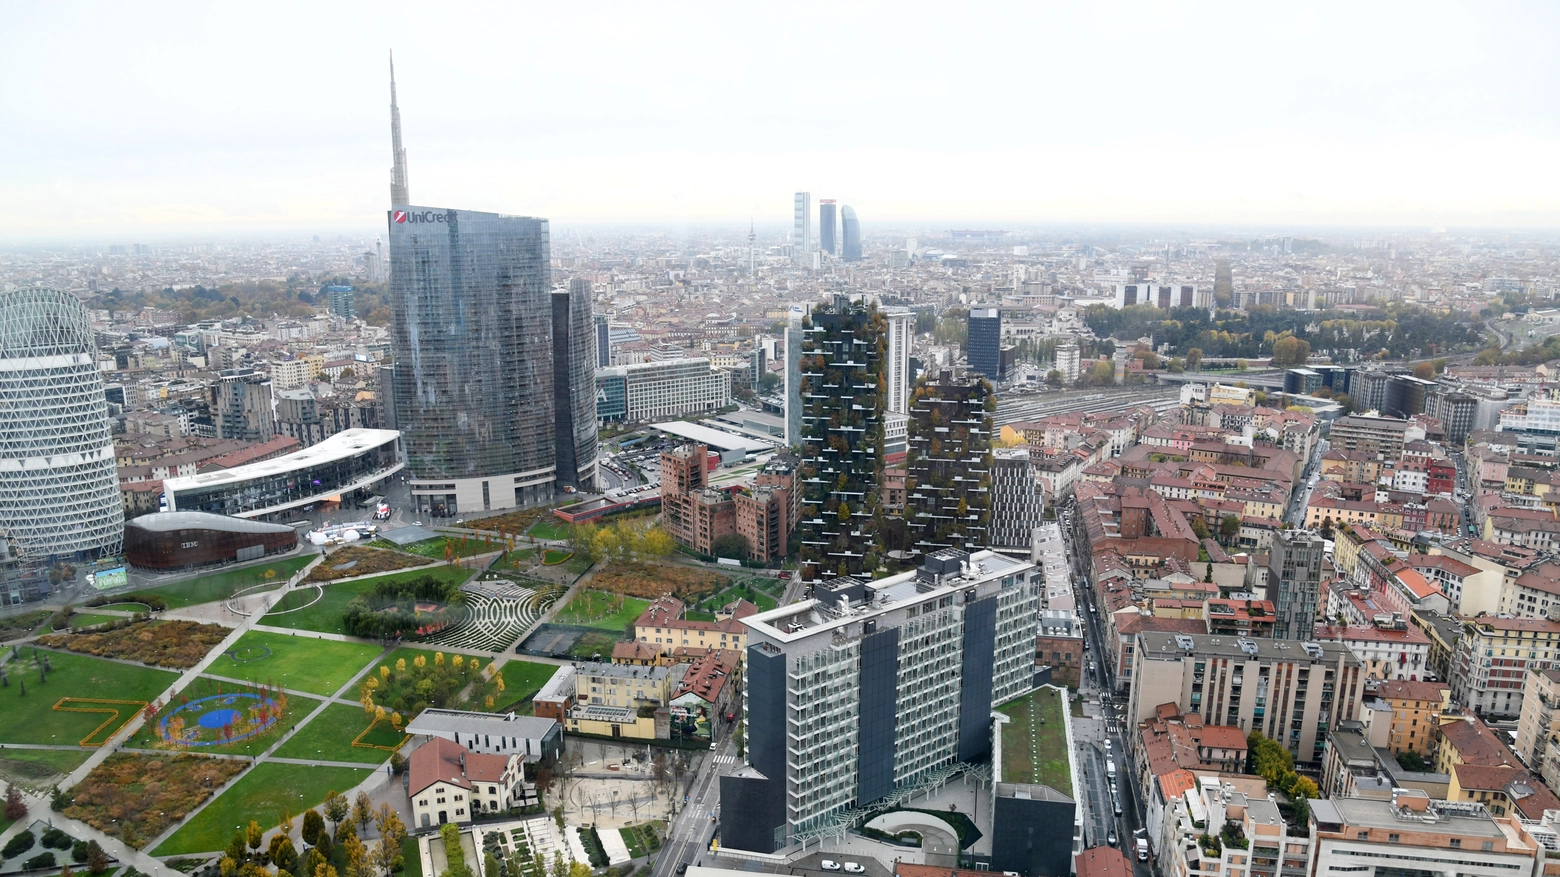 Trilocali a Milano, i prezzi zona per zona. Ecco dove costano meno di 300mila euro